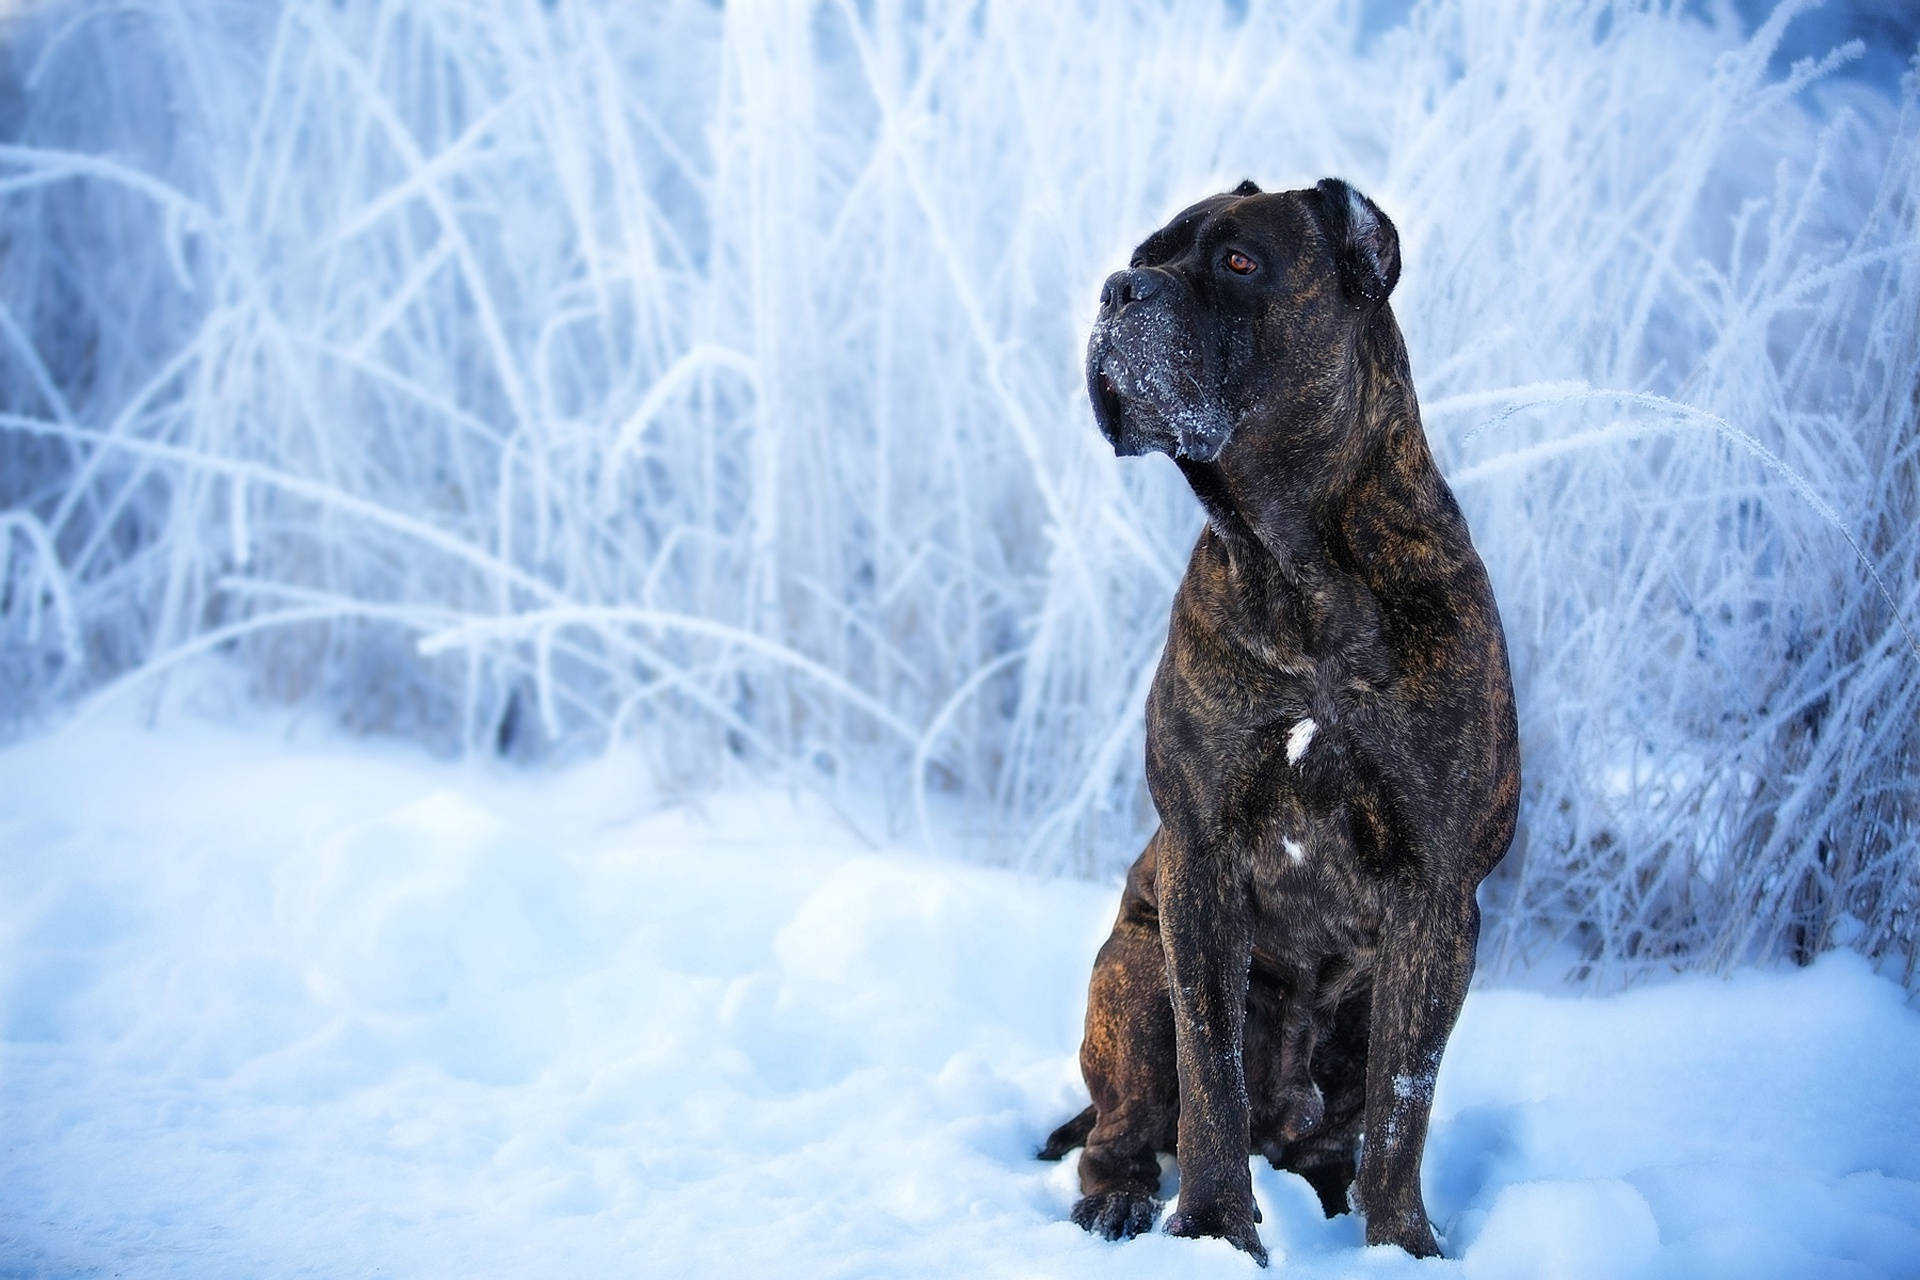 Cane Corso Dog In Snow Wallpaper